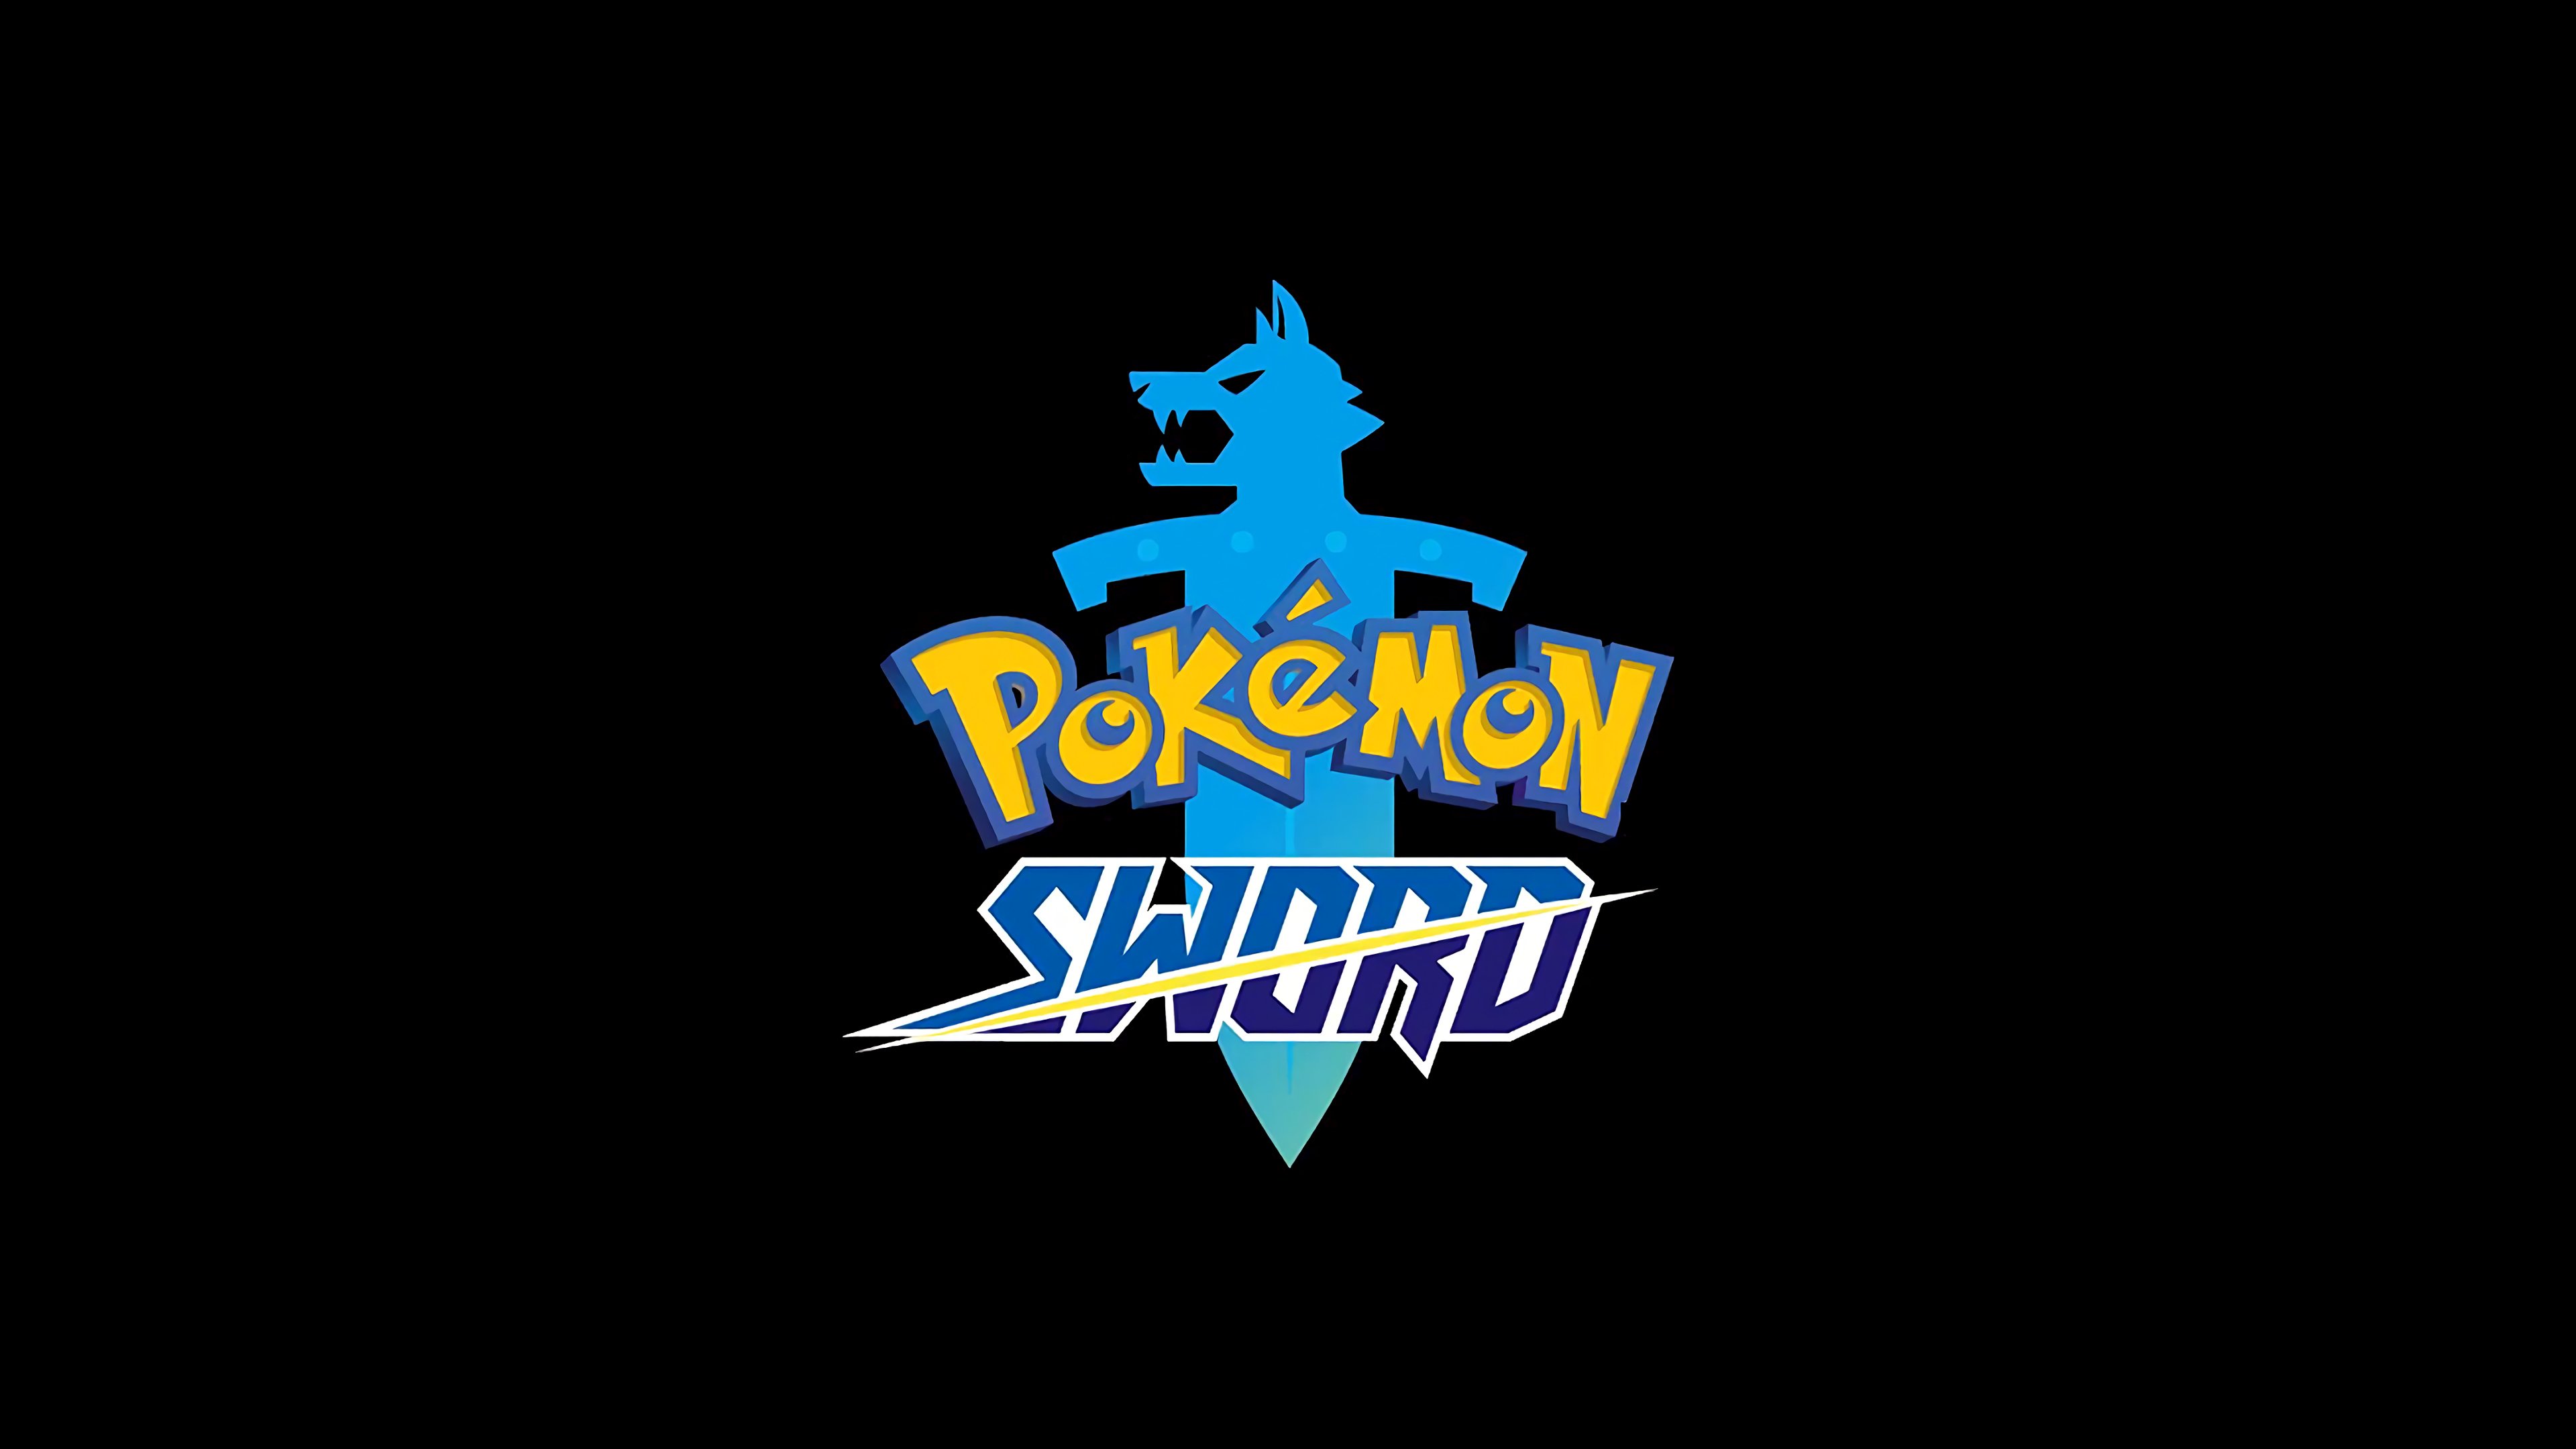 Pokemon Sword Logo 4K Wallpaper